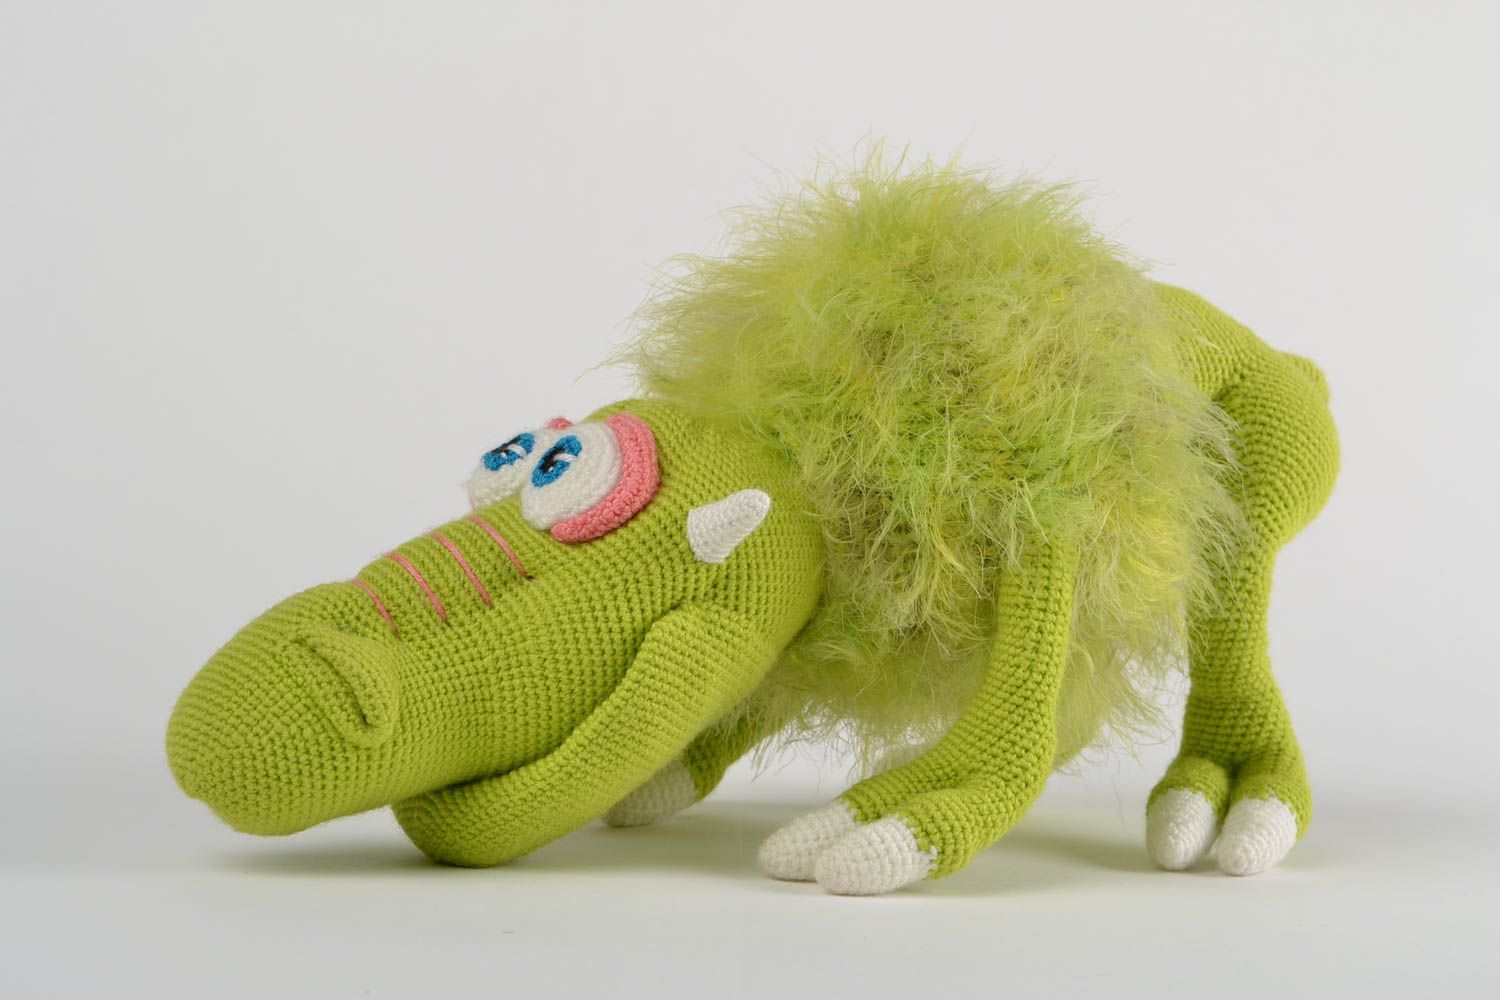 Мягкая вязаная игрушка ручной работы для детей смешная зеленая авторская Грагомот фото 4